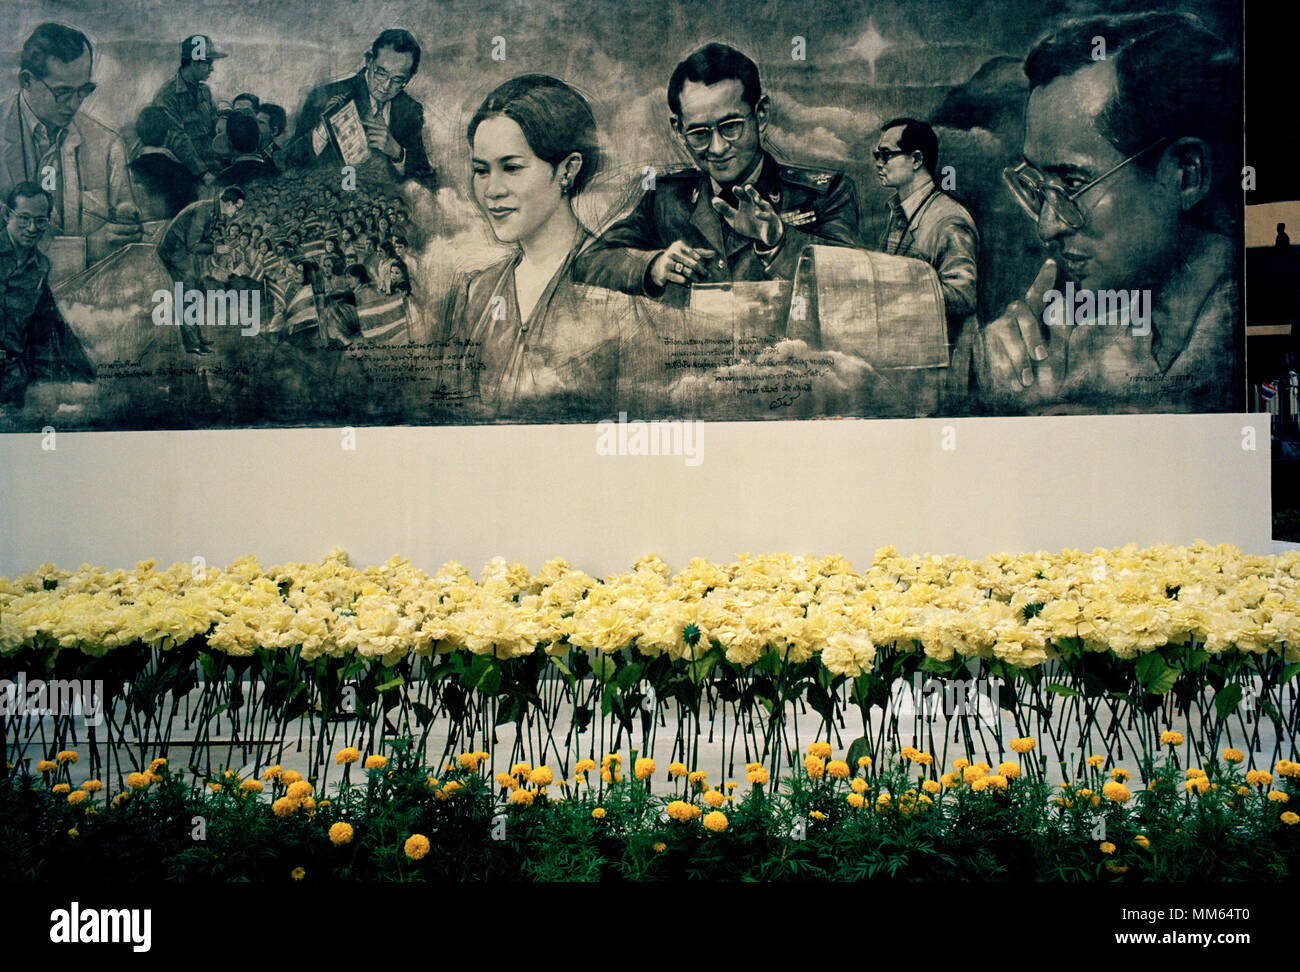 Mémorial de la rue Temple de la vie de la mort le roi Bhumibol Adulyadej thaïlandais à Bangkok en Thaïlande en Asie du Sud-Est Extrême-Orient. Billet d Banque D'Images